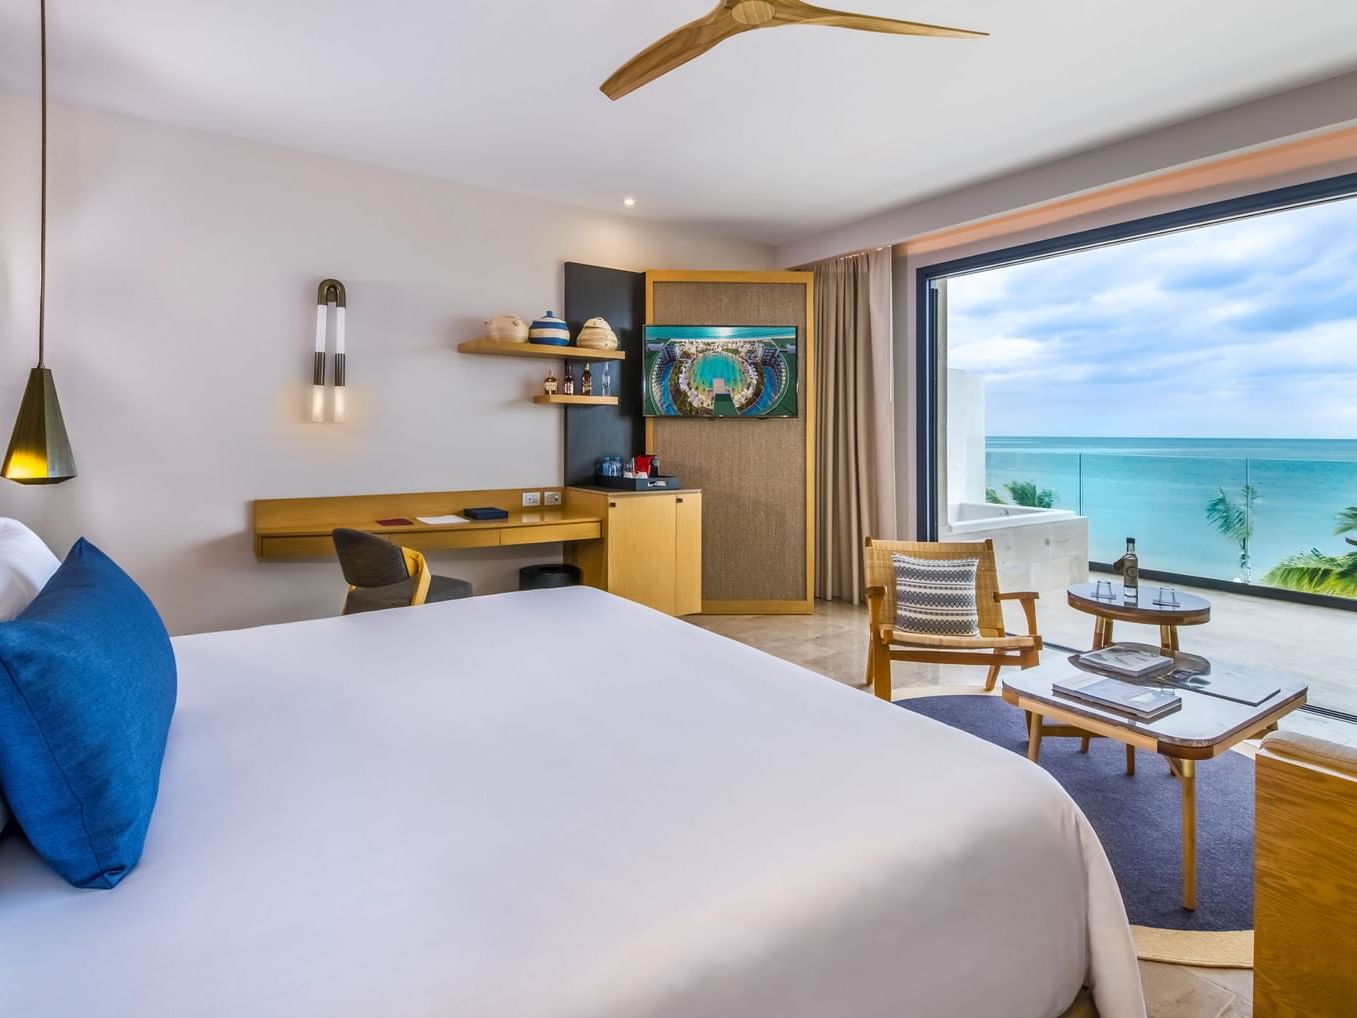 King bed, work desk, TV & balcony of Junior Suite Ocean Front View at Heaven Resort